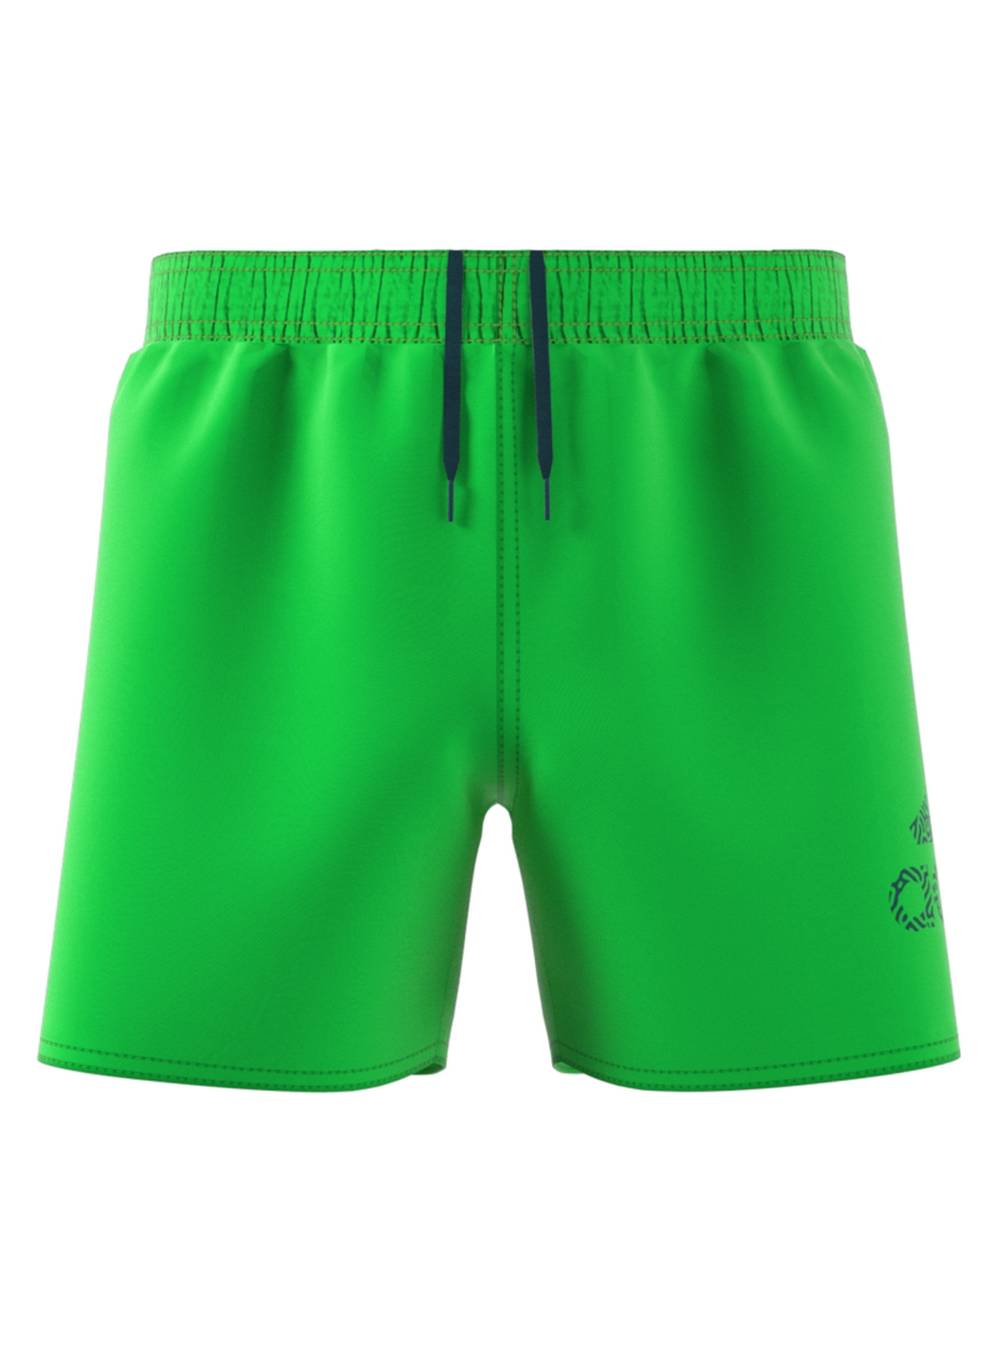 Adidas traje de baño color con cordón en cintura verde claro 'l